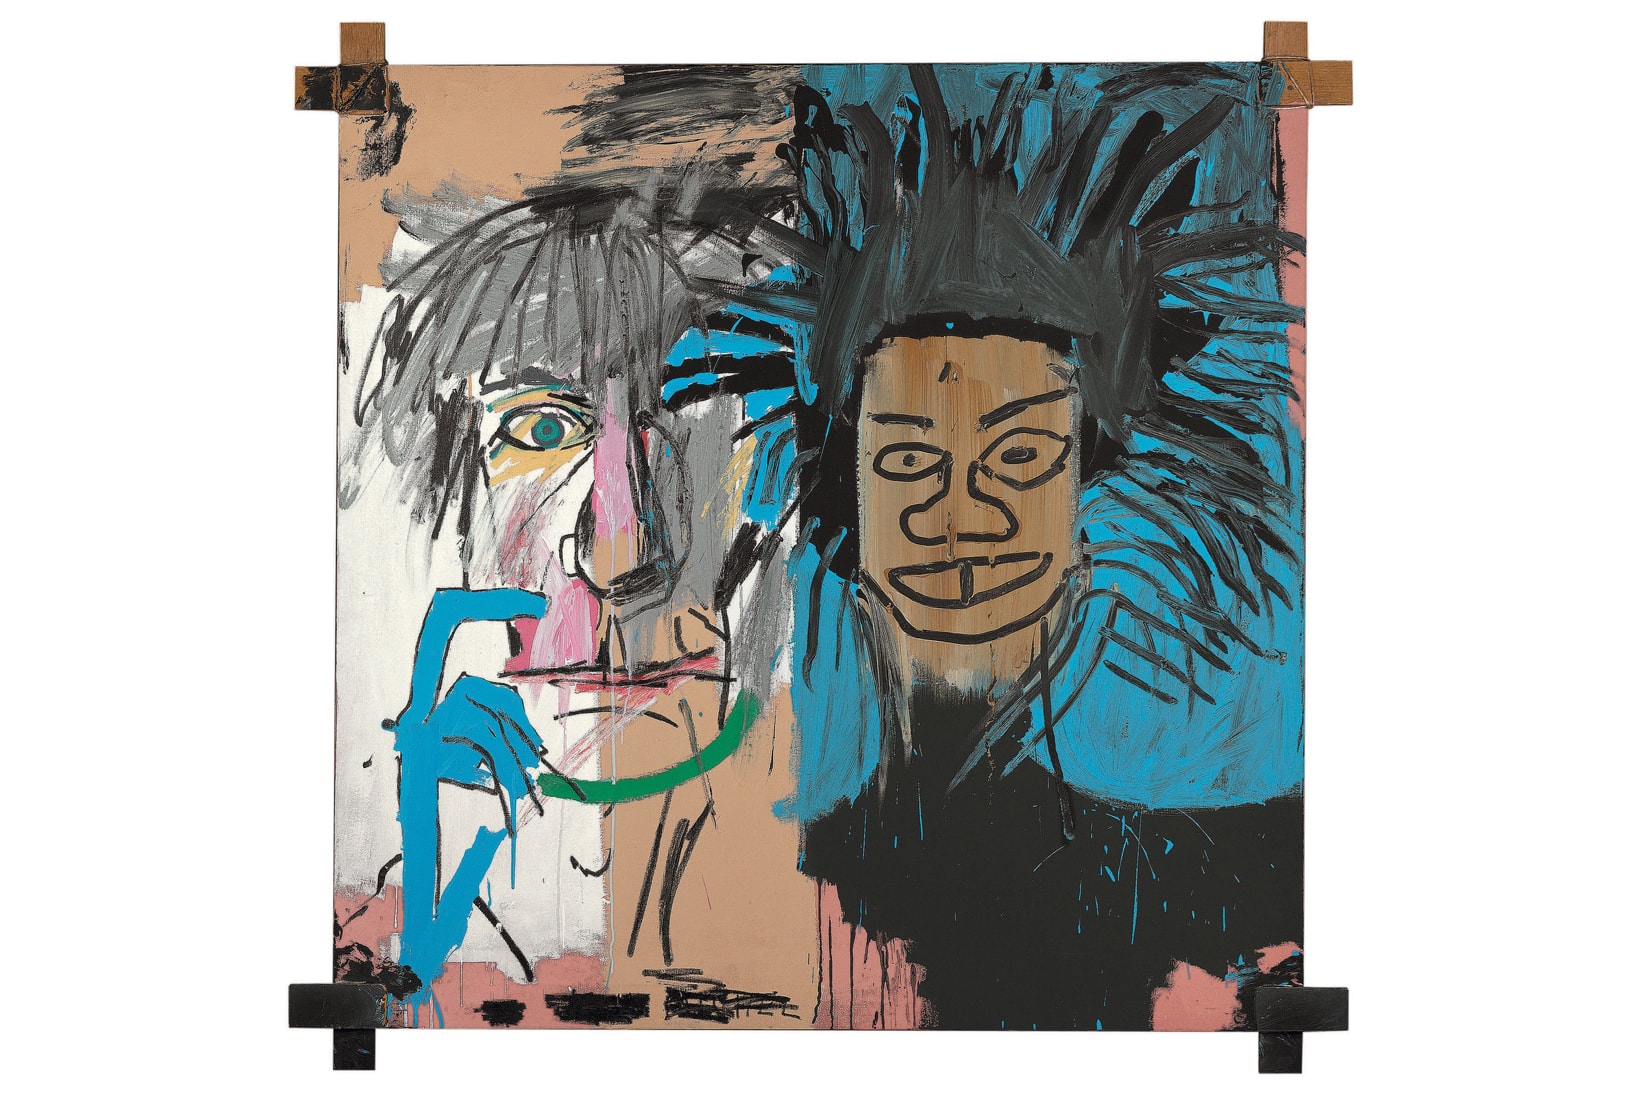 fondation louis vuitton jean michel basquiat retrospective exhibitions shows art artworks paintings